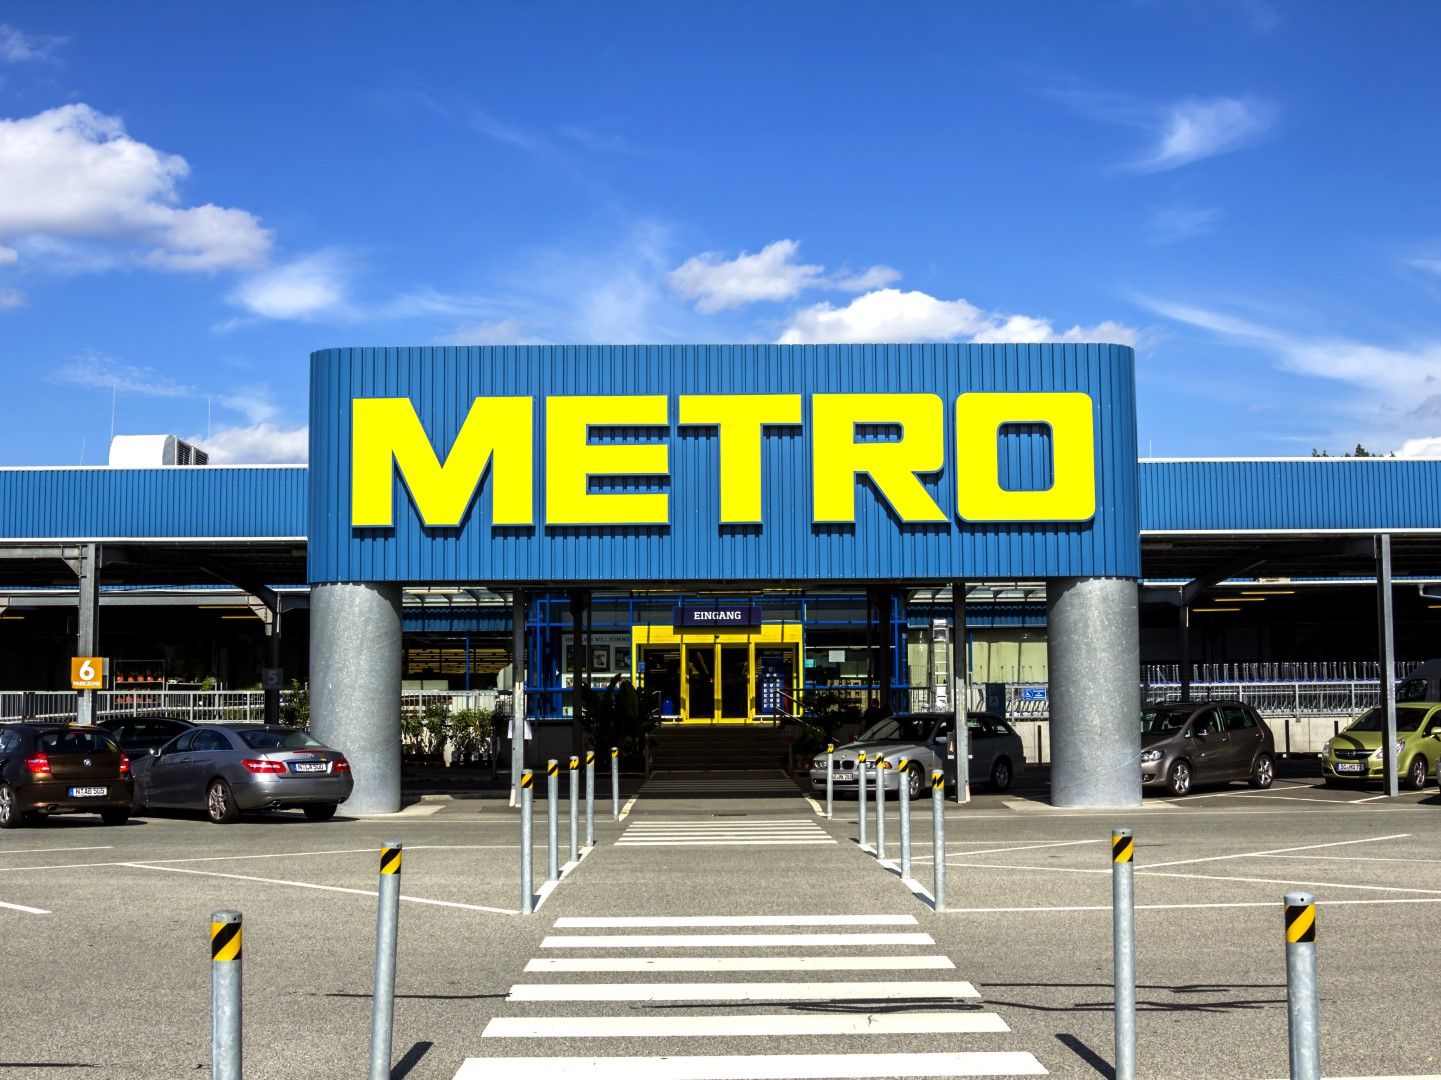 16 евро за обикновена акция и 13,80 евро за преференциална, "значително подценява стойността на компанията", посочва немският гигант Metro